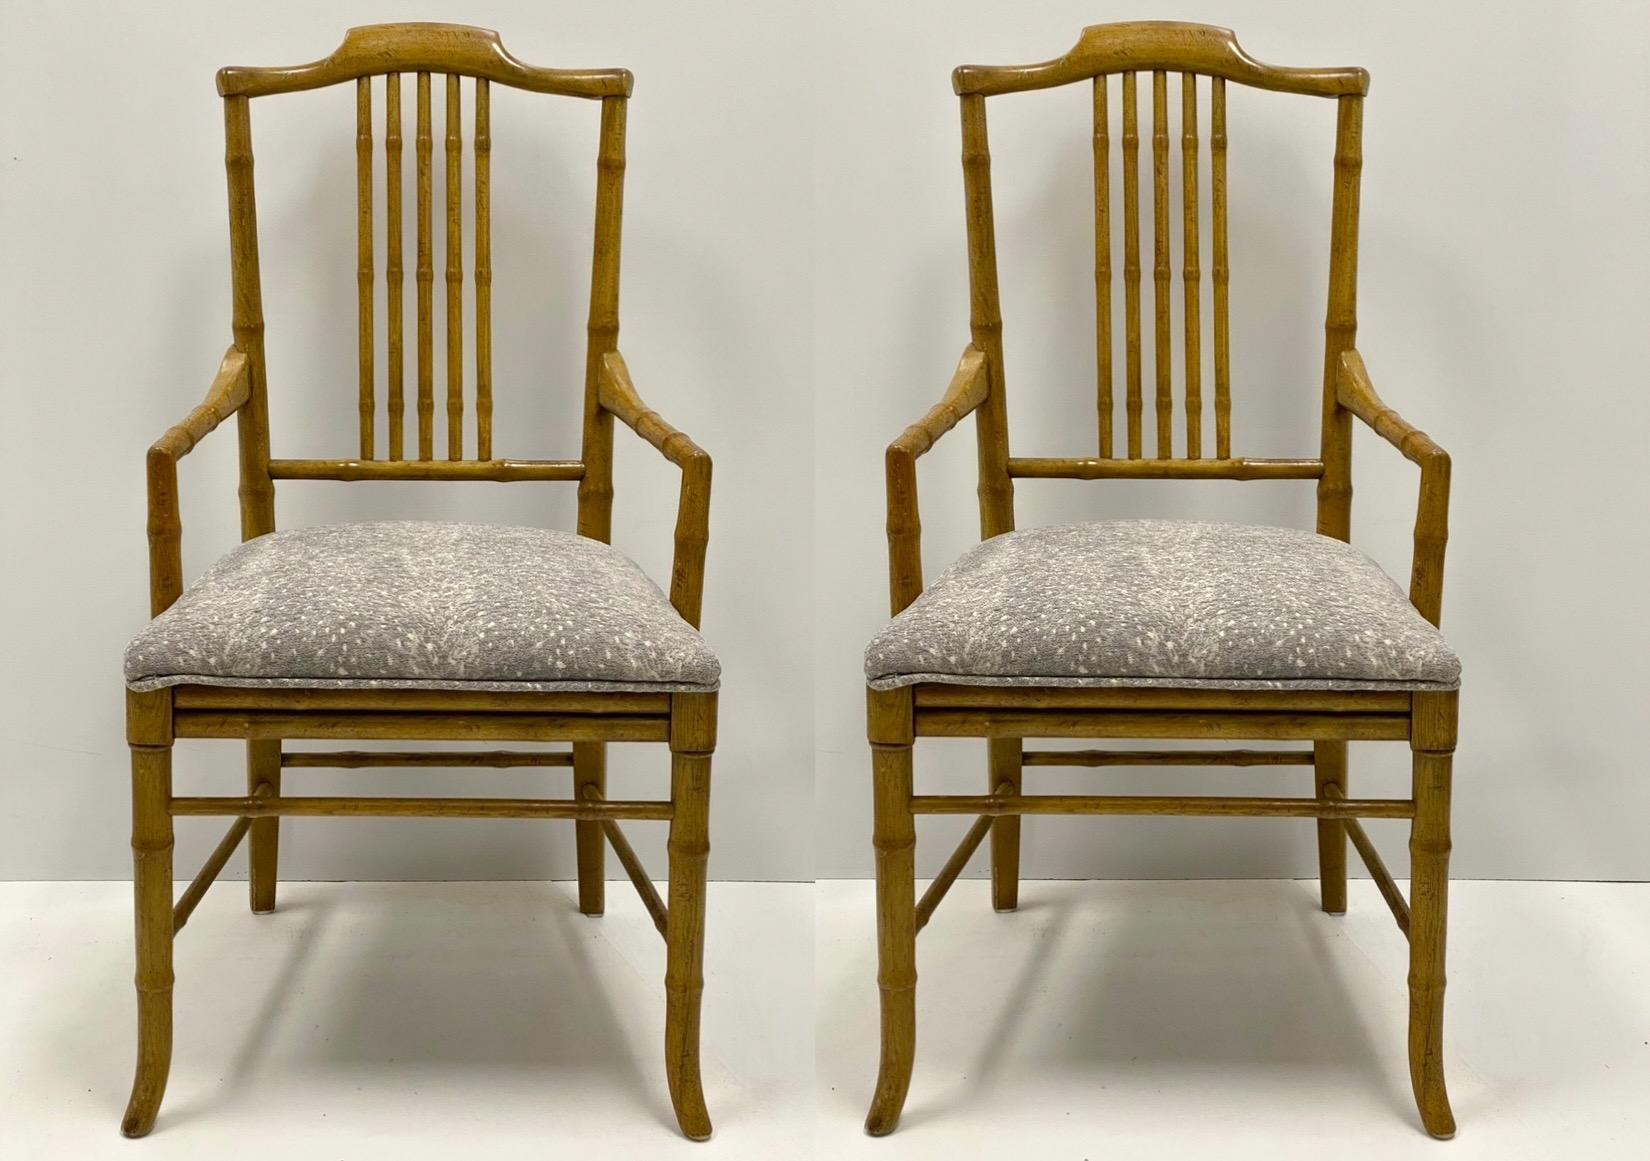 Dies ist ein Paar von Regency-Stil faux Bambus Sessel in einem gefleckten grau fawn Stoff gepolstert. Der Rahmen scheint aus Ahorn zu sein. Sie stammen höchstwahrscheinlich aus den 70er Jahren und sind unmarkiert. Das Paar ist in sehr gutem Zustand.